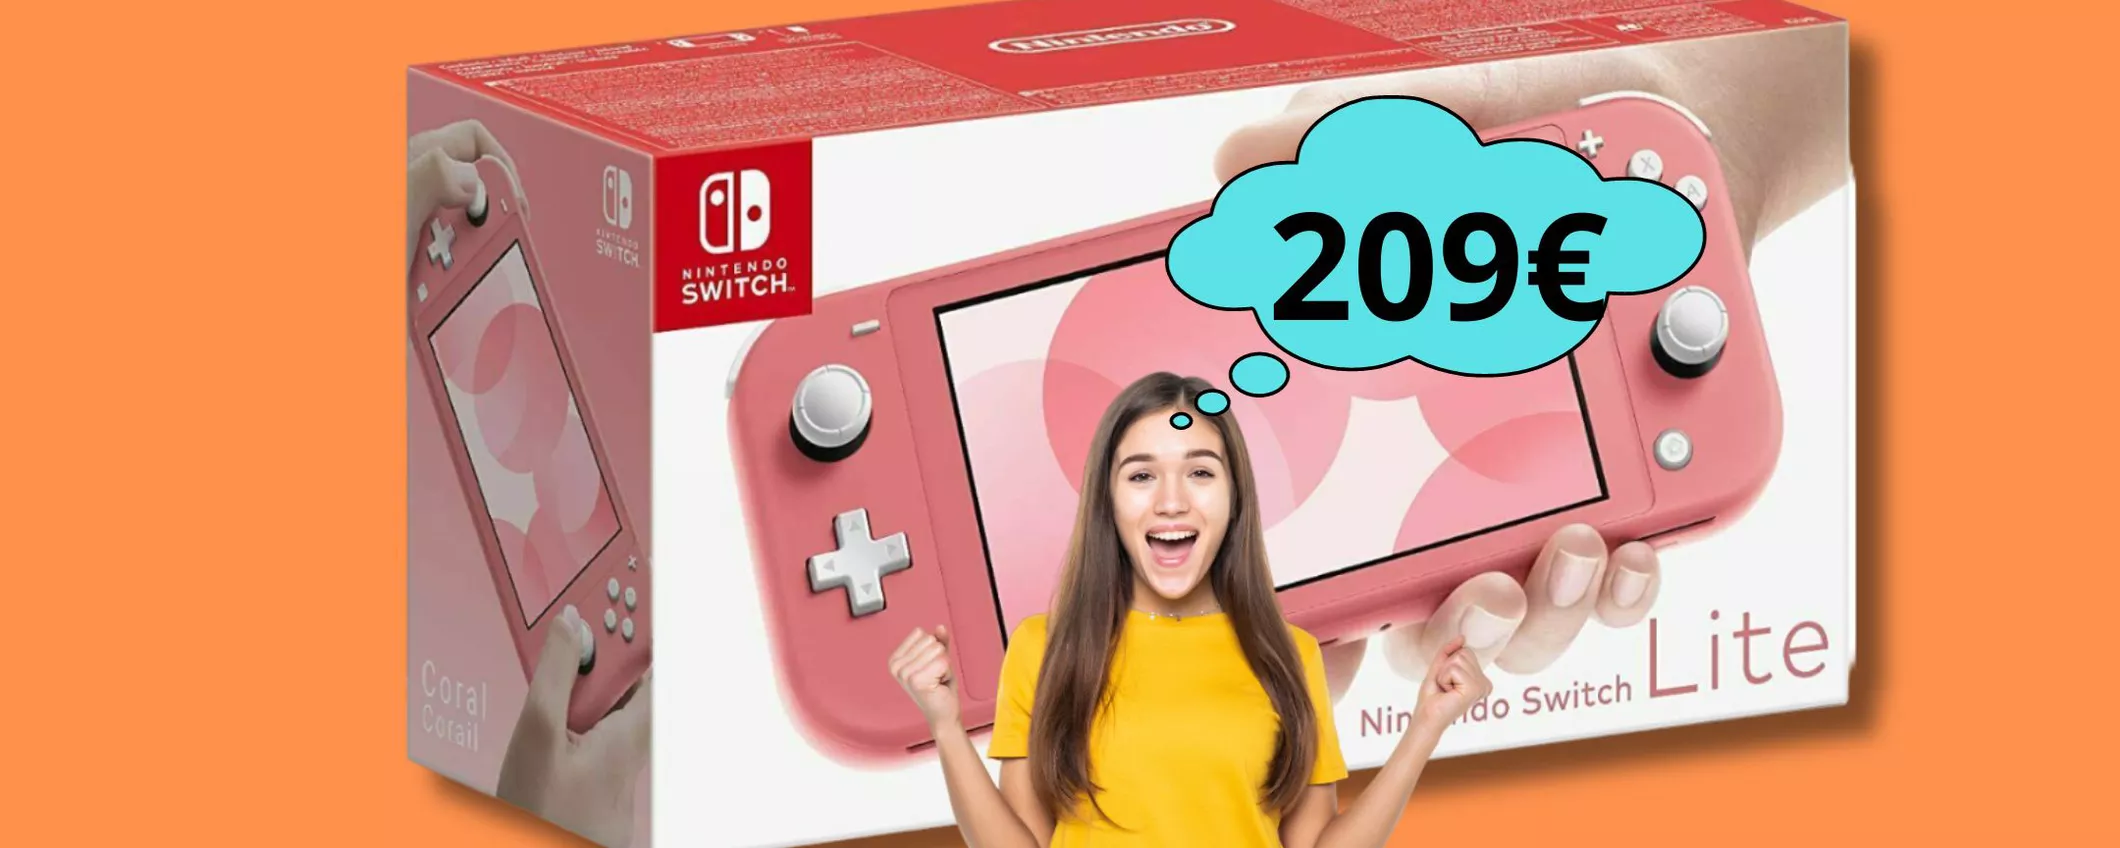 Nintendo Switch lite, prendila in questa fiabesca tinta corallo a soli 209 euro!